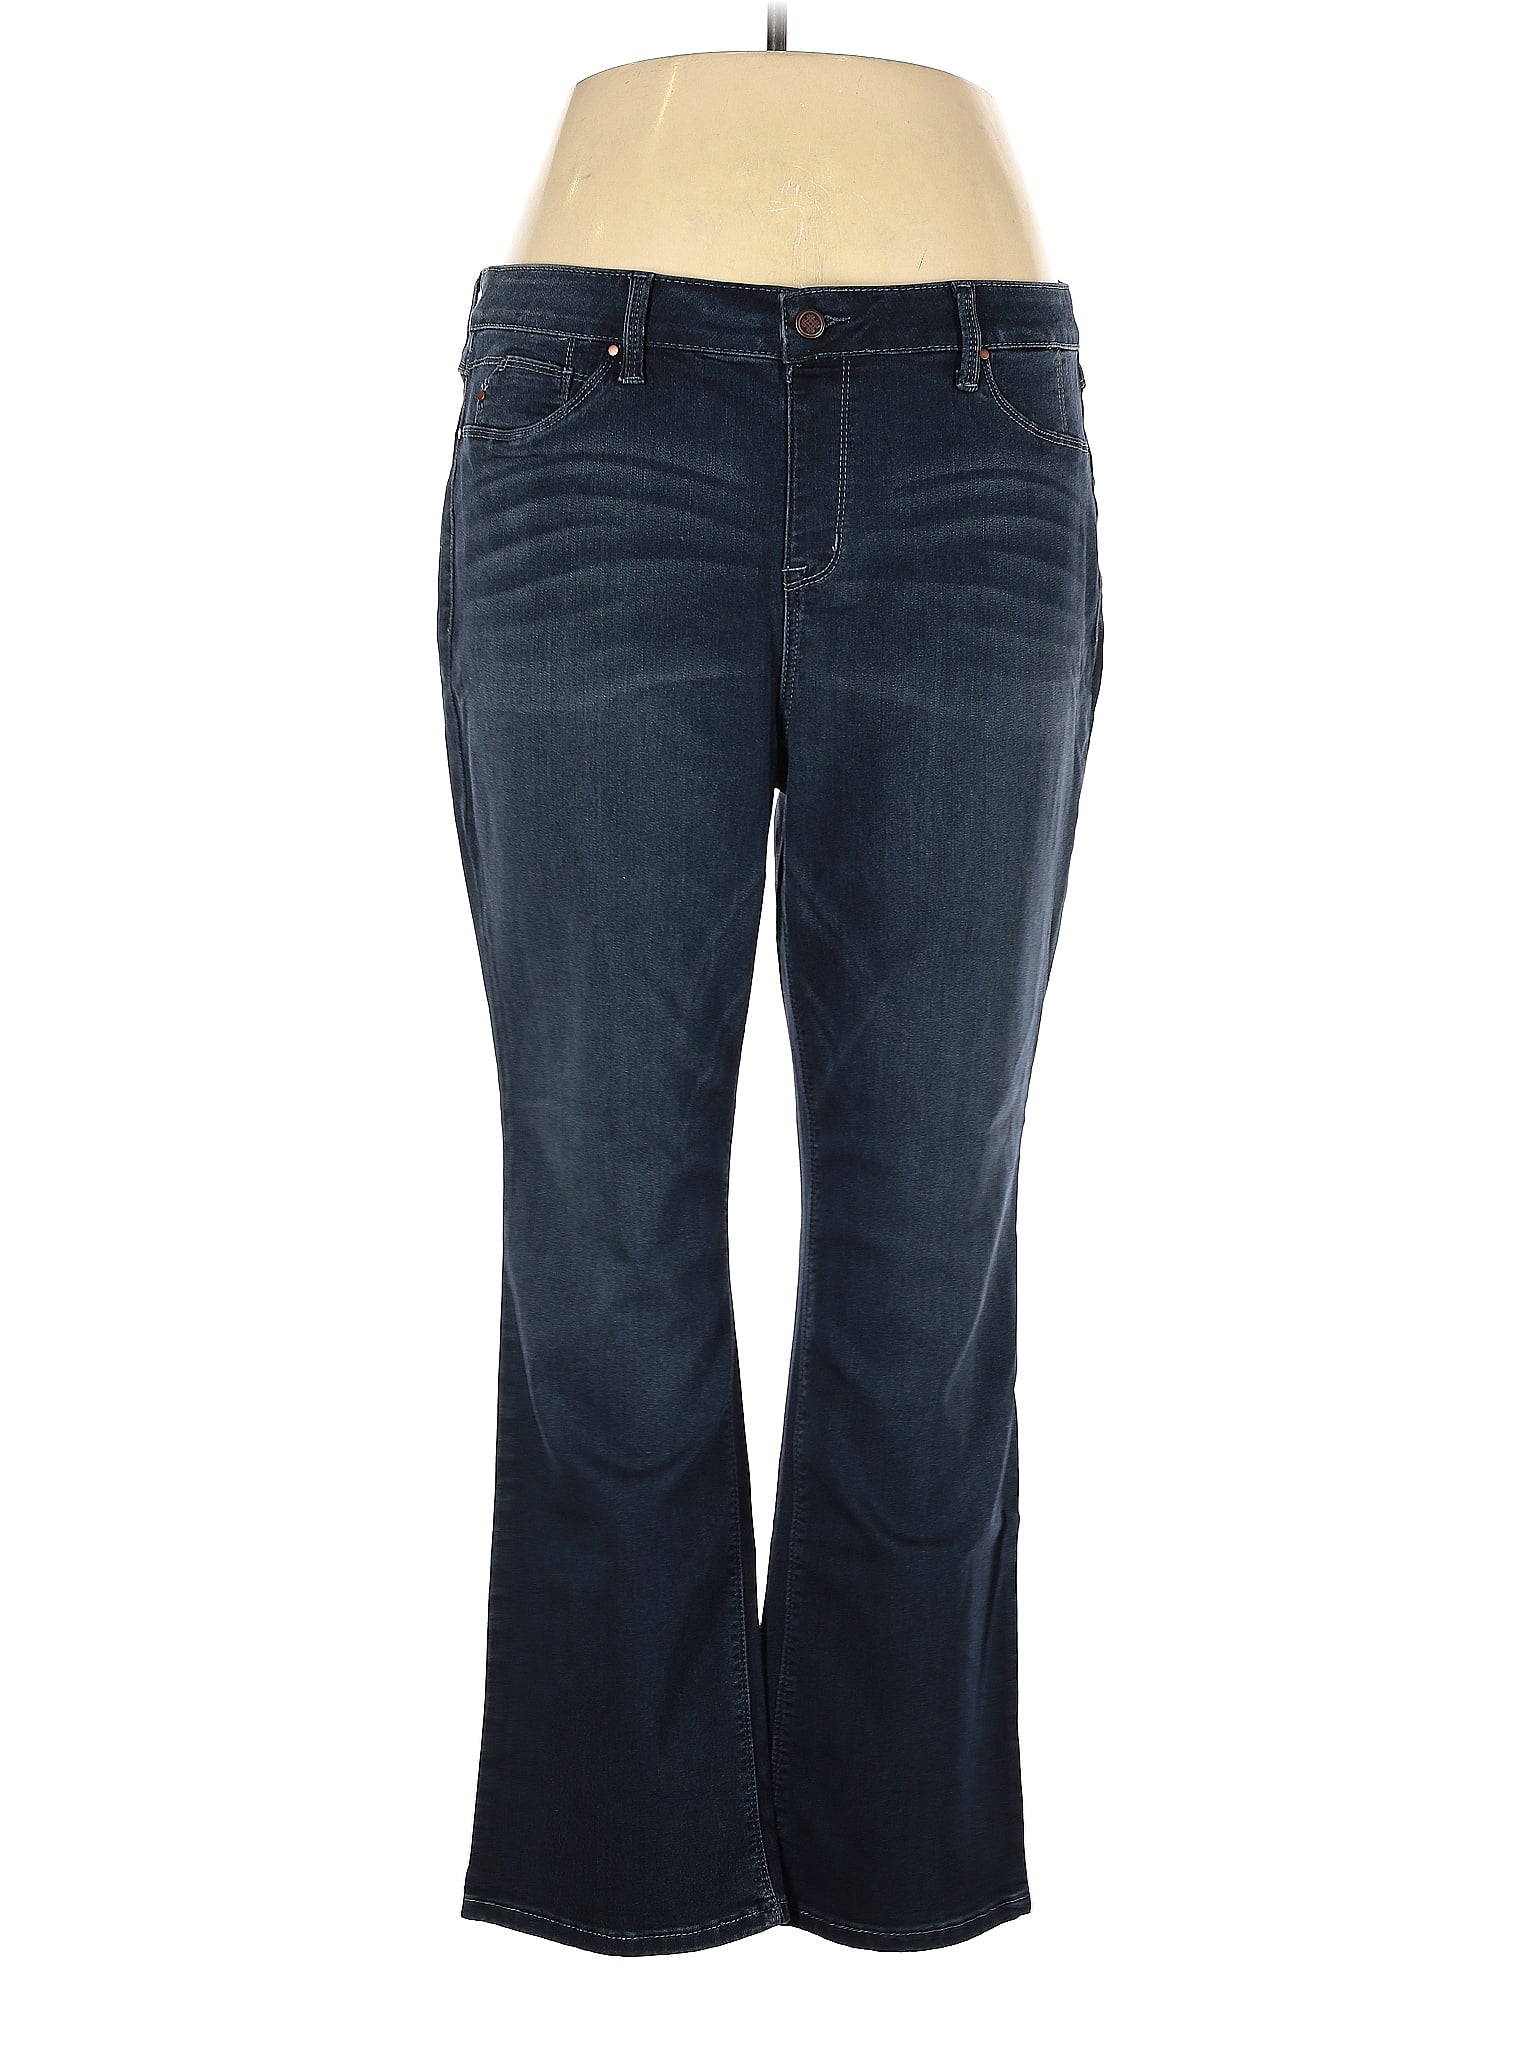 Laurie Felt Blue Jeans Size 1X (Plus) - 74% off | thredUP